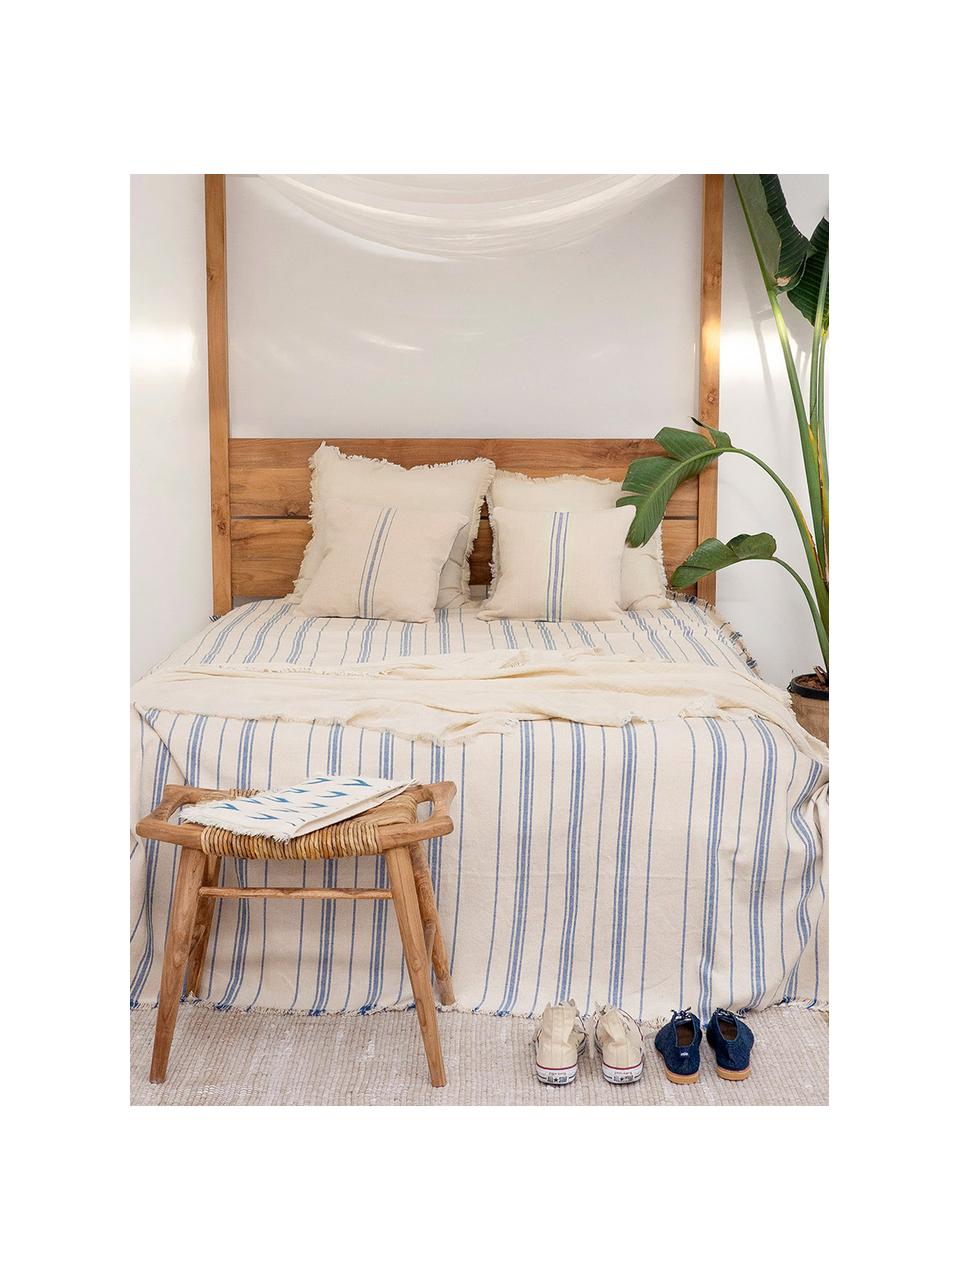 Gestreifte Tagesdecke Capri aus Baumwolle, 100% Baumwolle, Cremefarben, Blau, B 180 x L 260 cm (für Betten bis 140 x 200 cm)